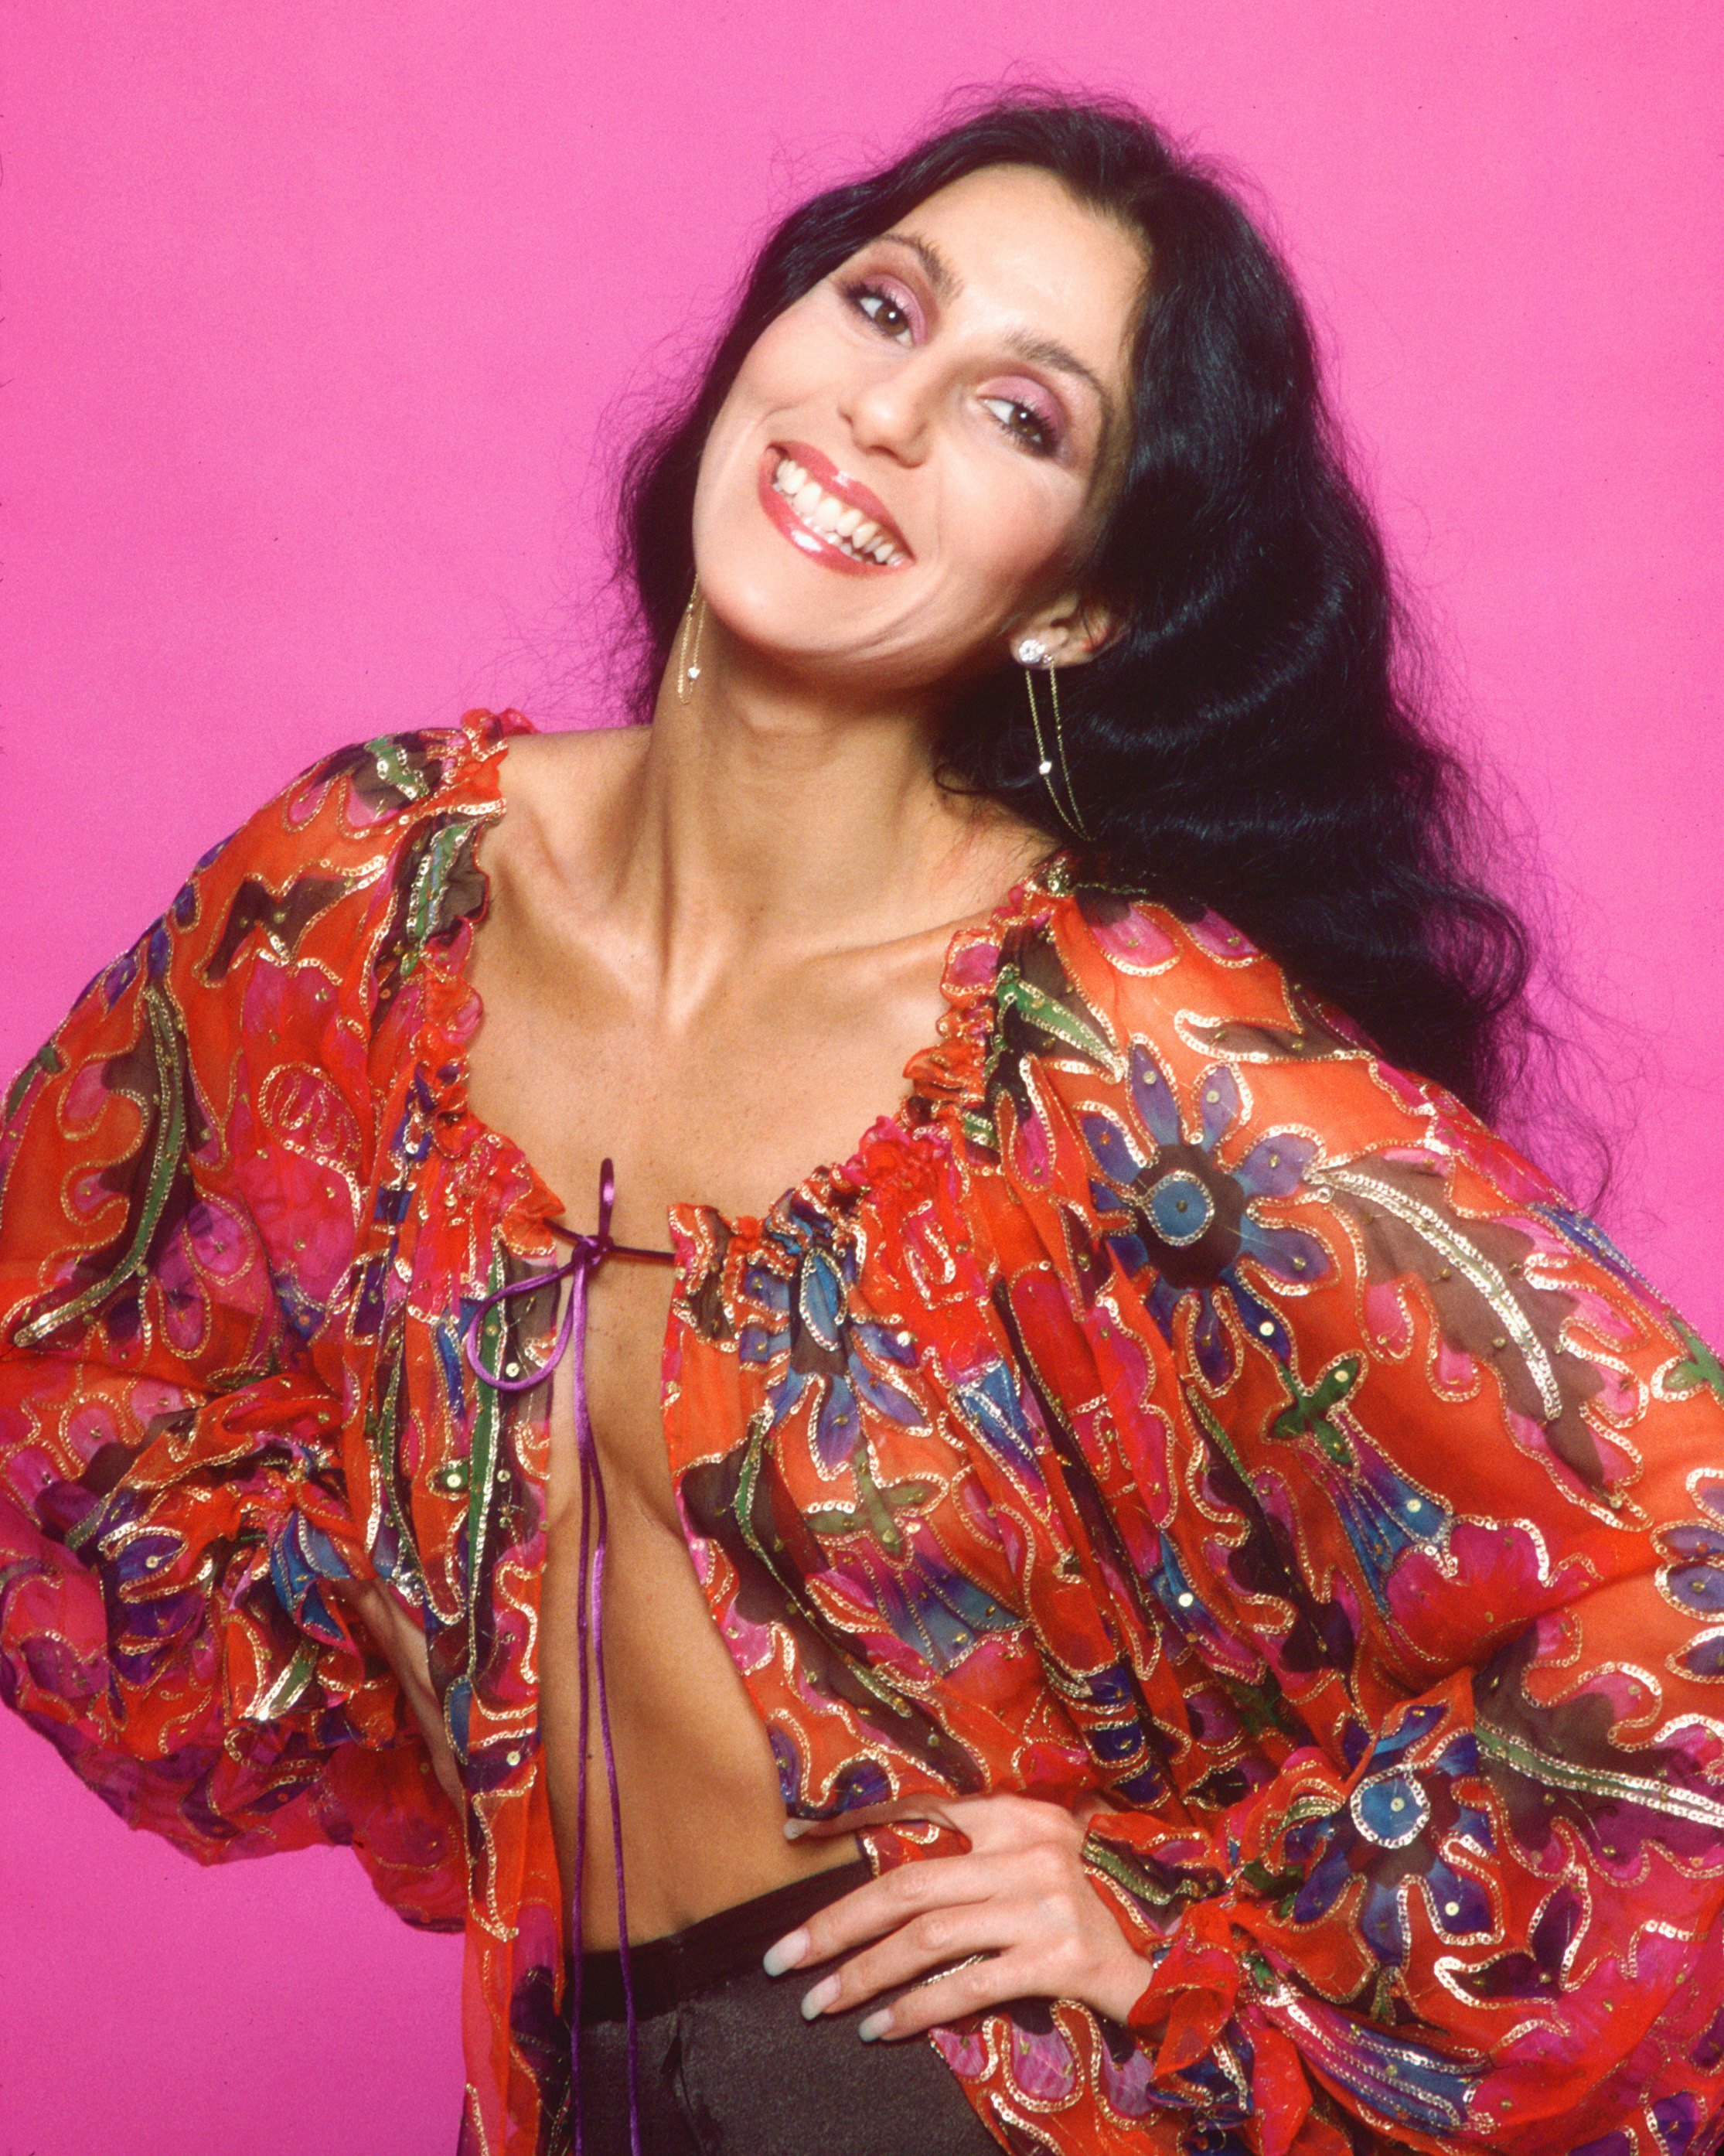 Cher in Los Angeles, Kalifornien am 21. März 1977 | Quelle: Getty Images